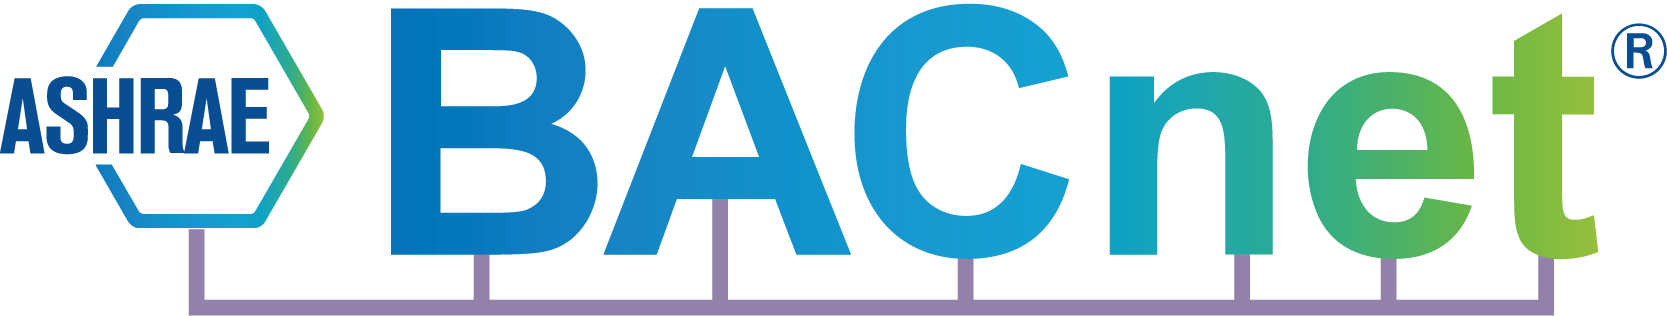 BACnet Logo